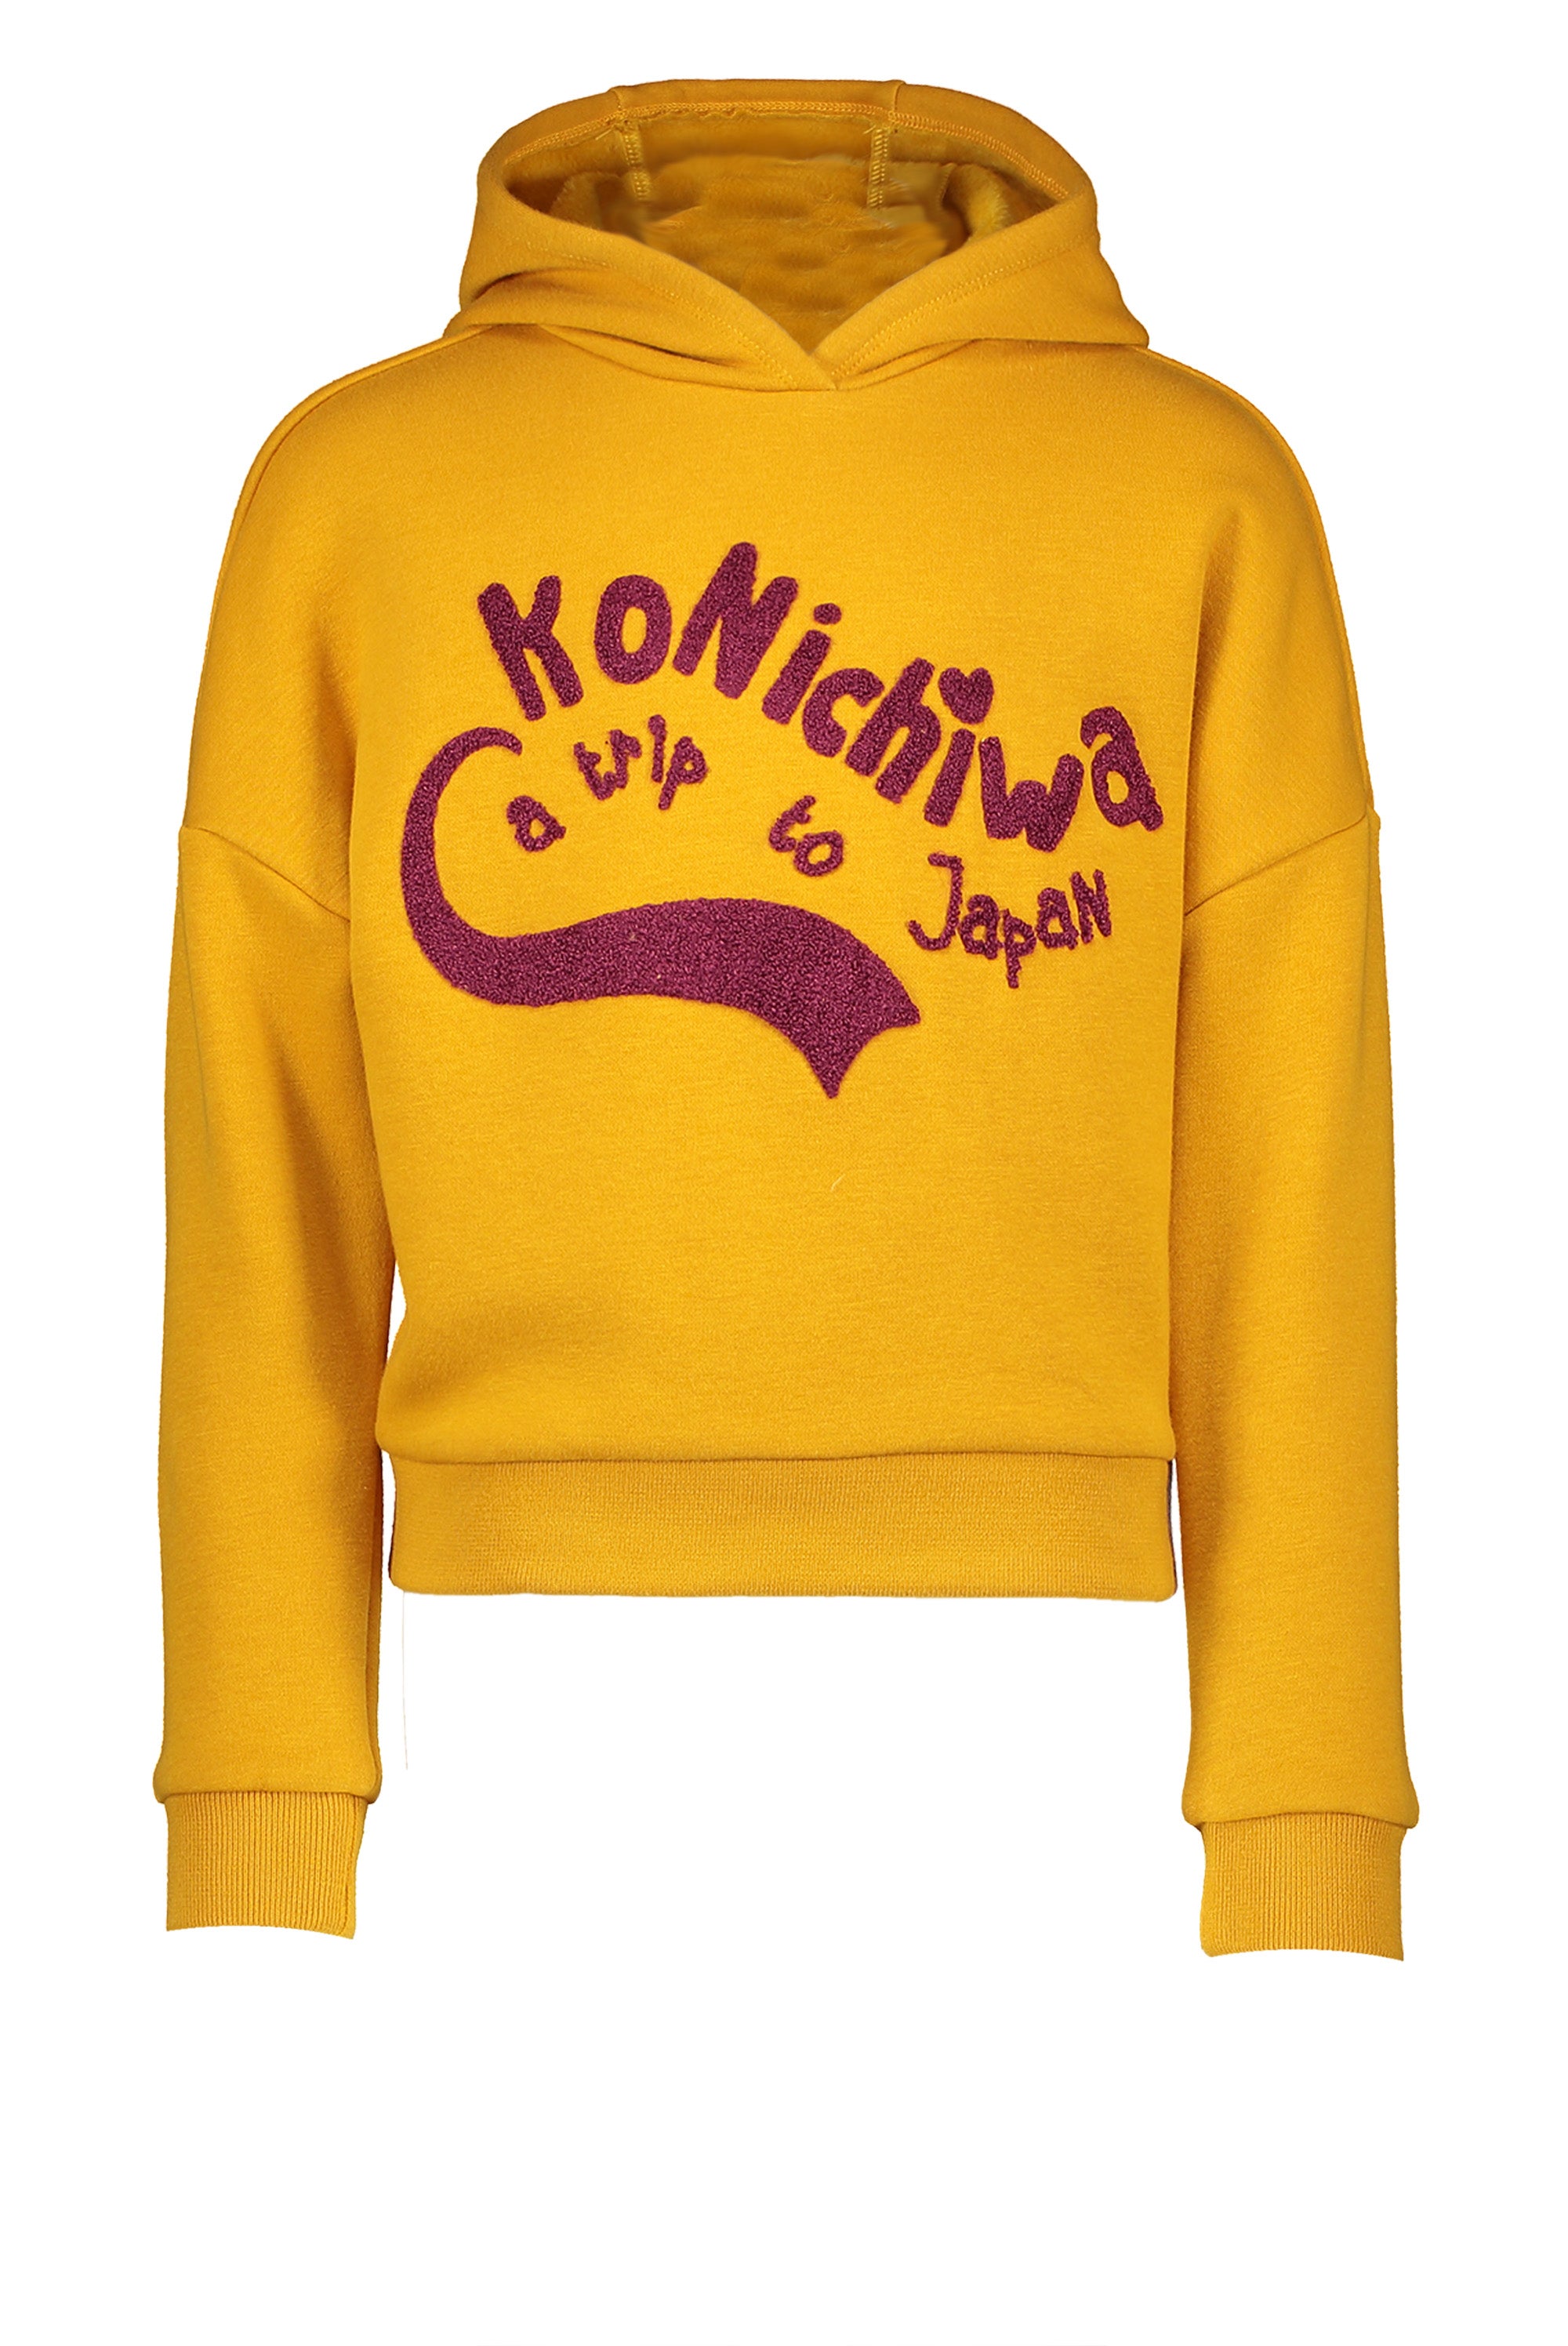 NoNo Kumy hooded furry sweat sweater Konichiwa artwork